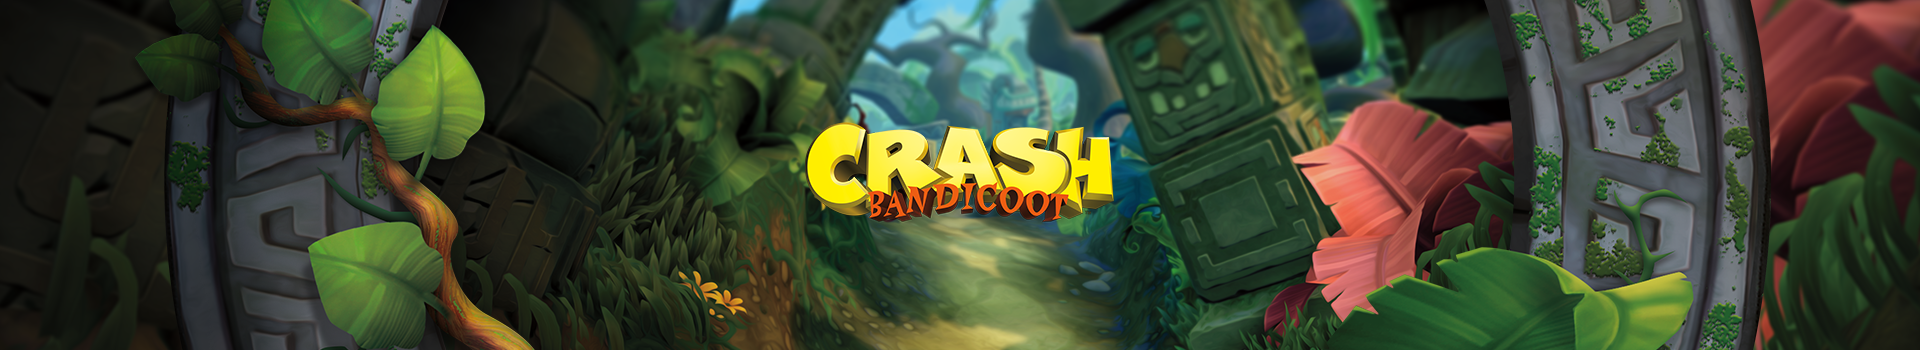 crash-neutral-banner-game-legends Image